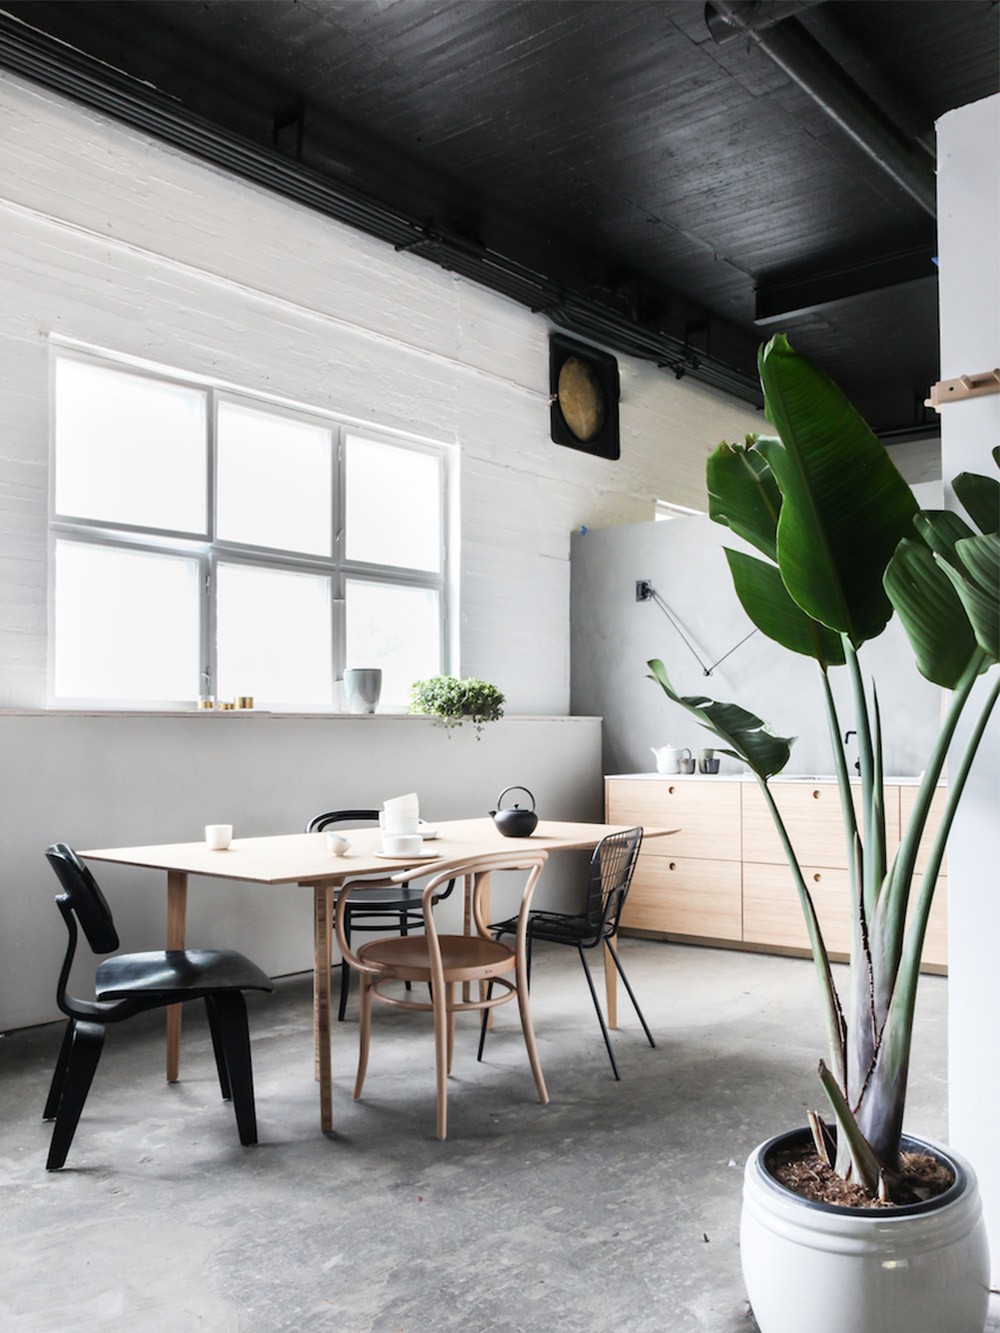 Décor do dia: cozinha minimalista tem teto preto e marcenaria de bambu (Foto: Ask Og Eng/Divulgação)